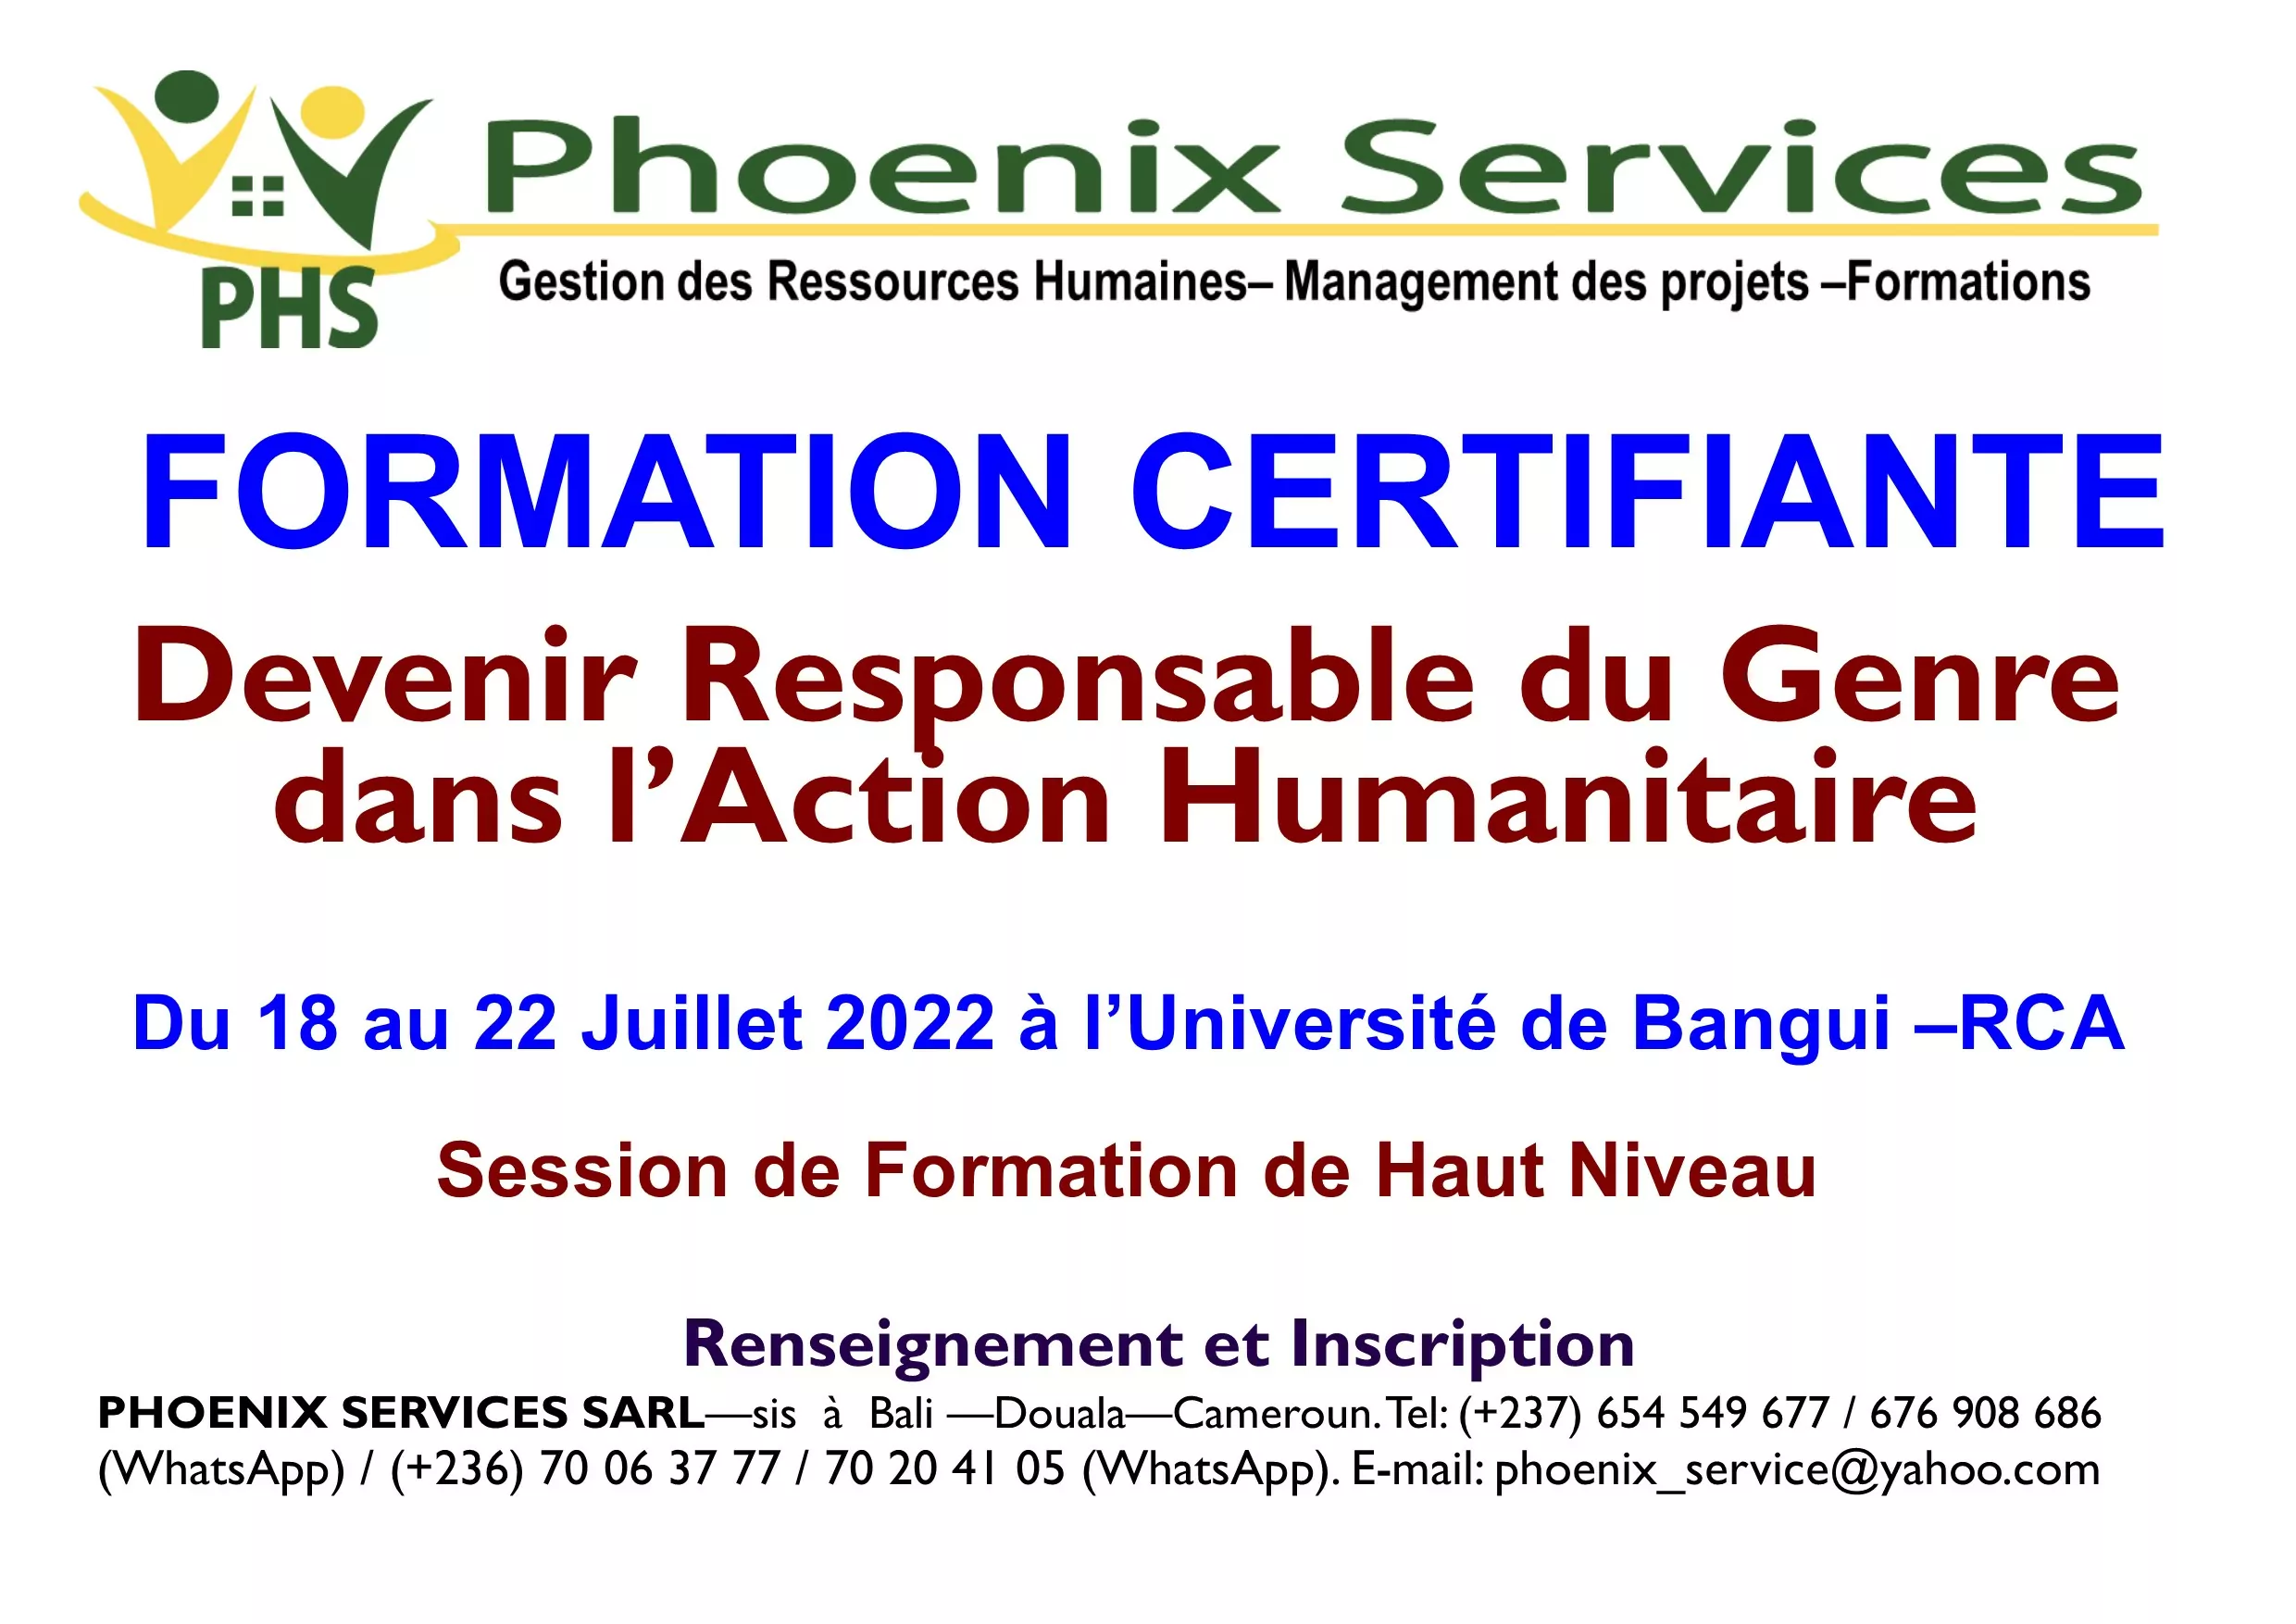 Phoenix Services Sarl lance une formation certifiante : Devenir Responsable du Genre dans l’Action Humanitaire, Bangui, RCA